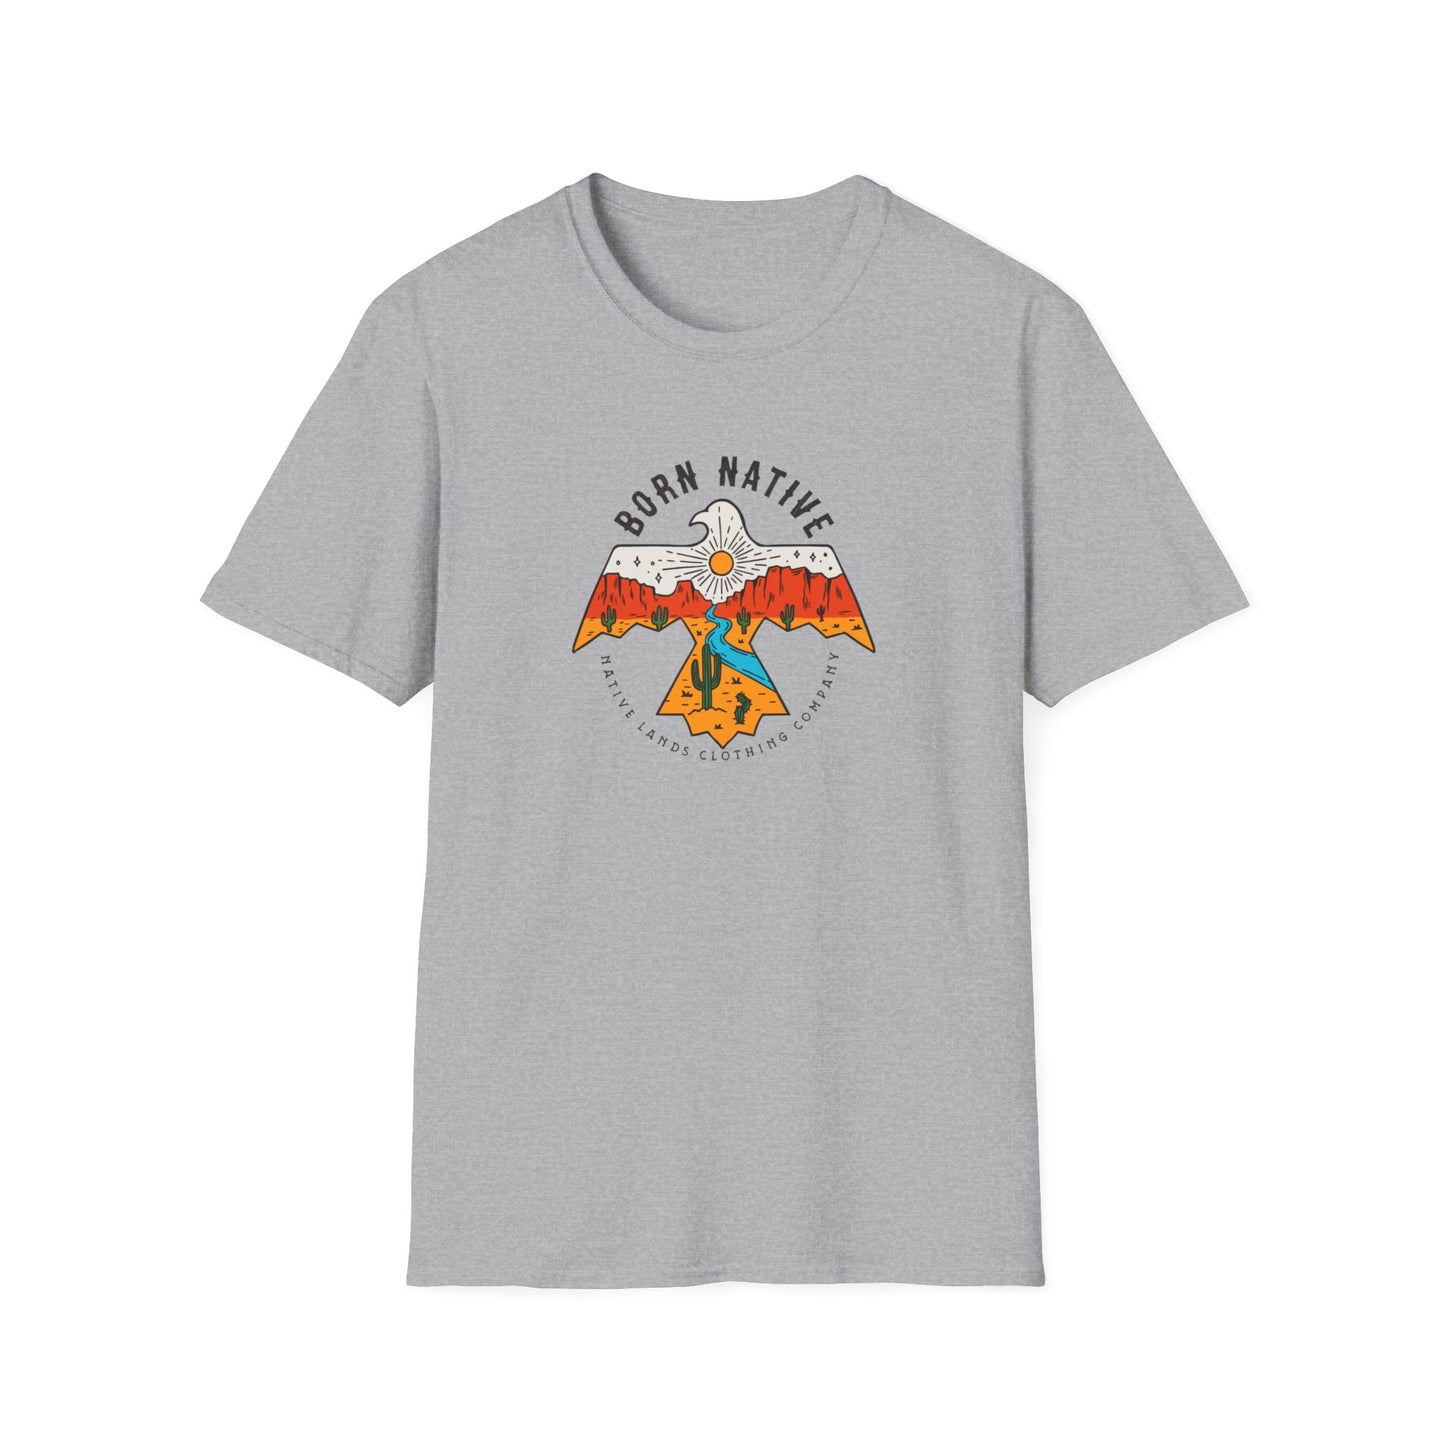 Born Native Thunderbird Shirt Cotton Native American